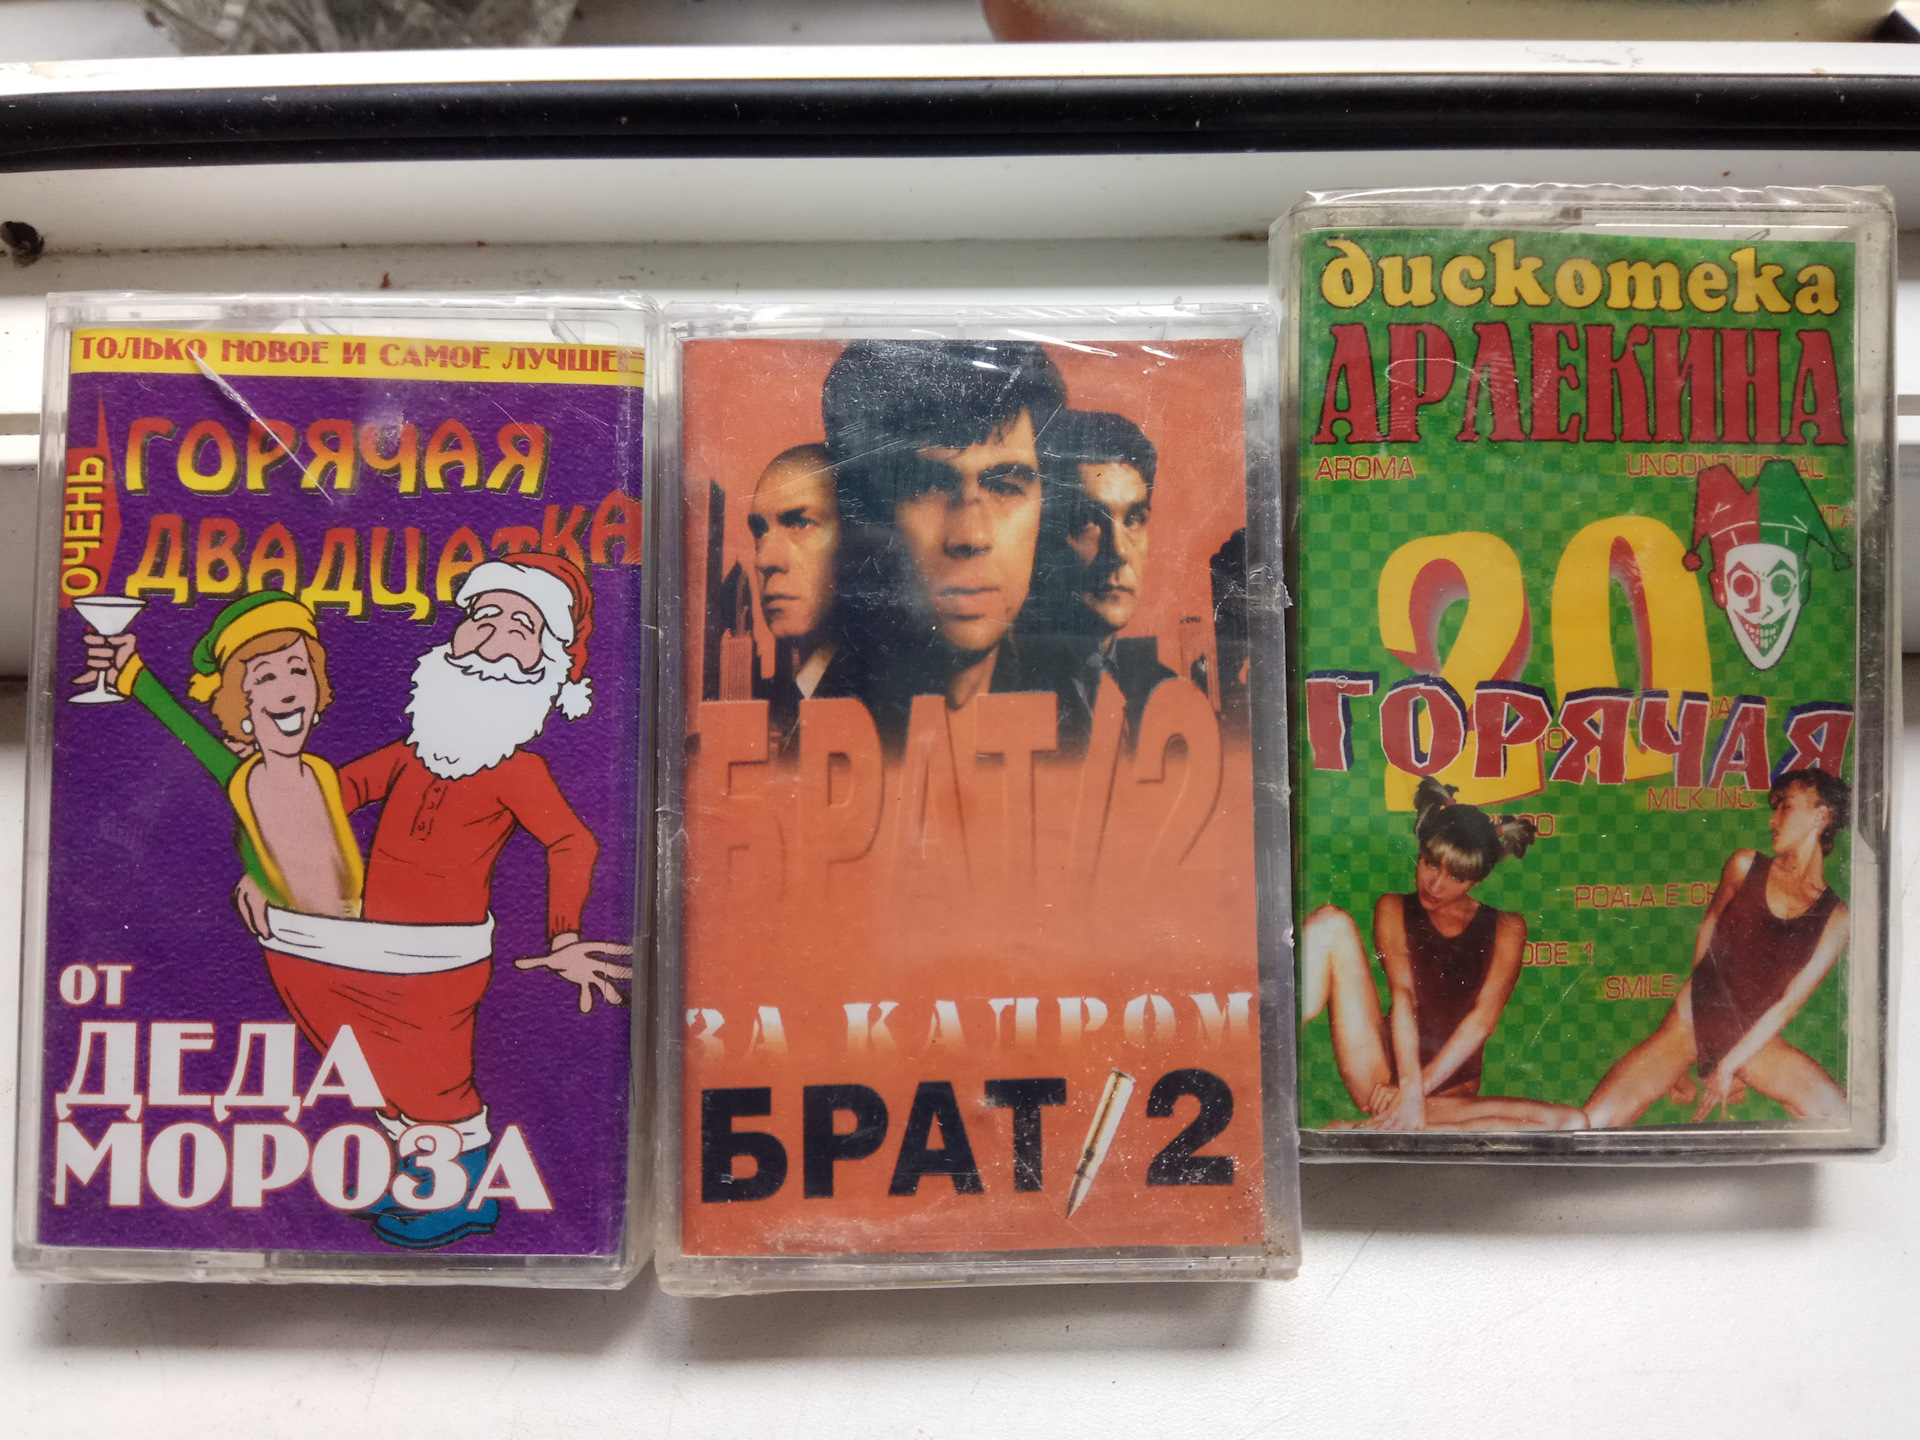 Батина кассета. Батина видеокассета. Запечатанные видеокассеты 90-х. Татар кассеты. Видеокассета с порнушкой.